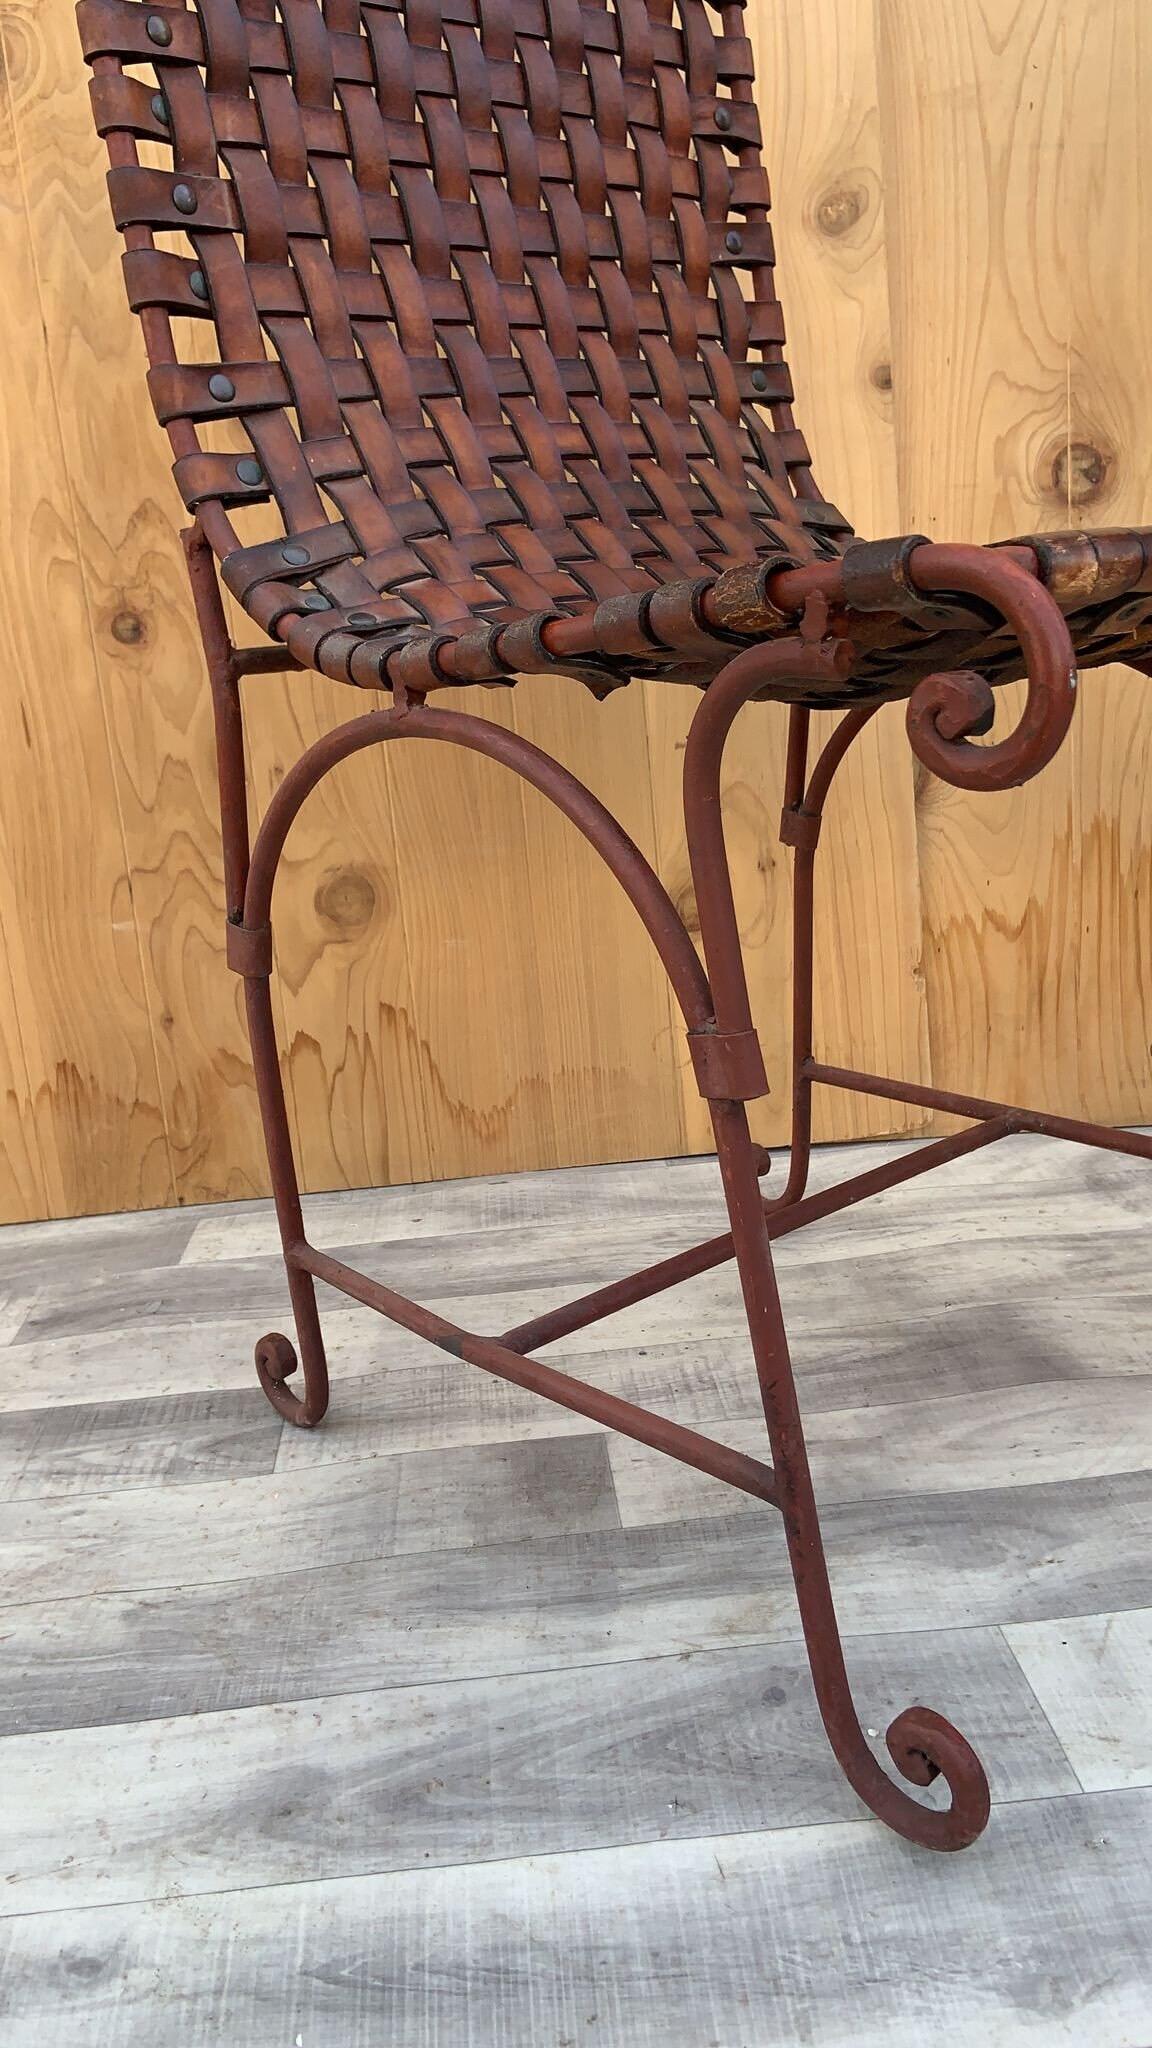 Vintage Italian Hand Forged Wrought-Iron Woven Leather Side Chairs - Pair

Vintage By, base à volutes en fer forgé à la main, avec cuir italien pleine fleur tissé à la main. Ces chaises latérales à volutes sont d'une qualité exceptionnelle et